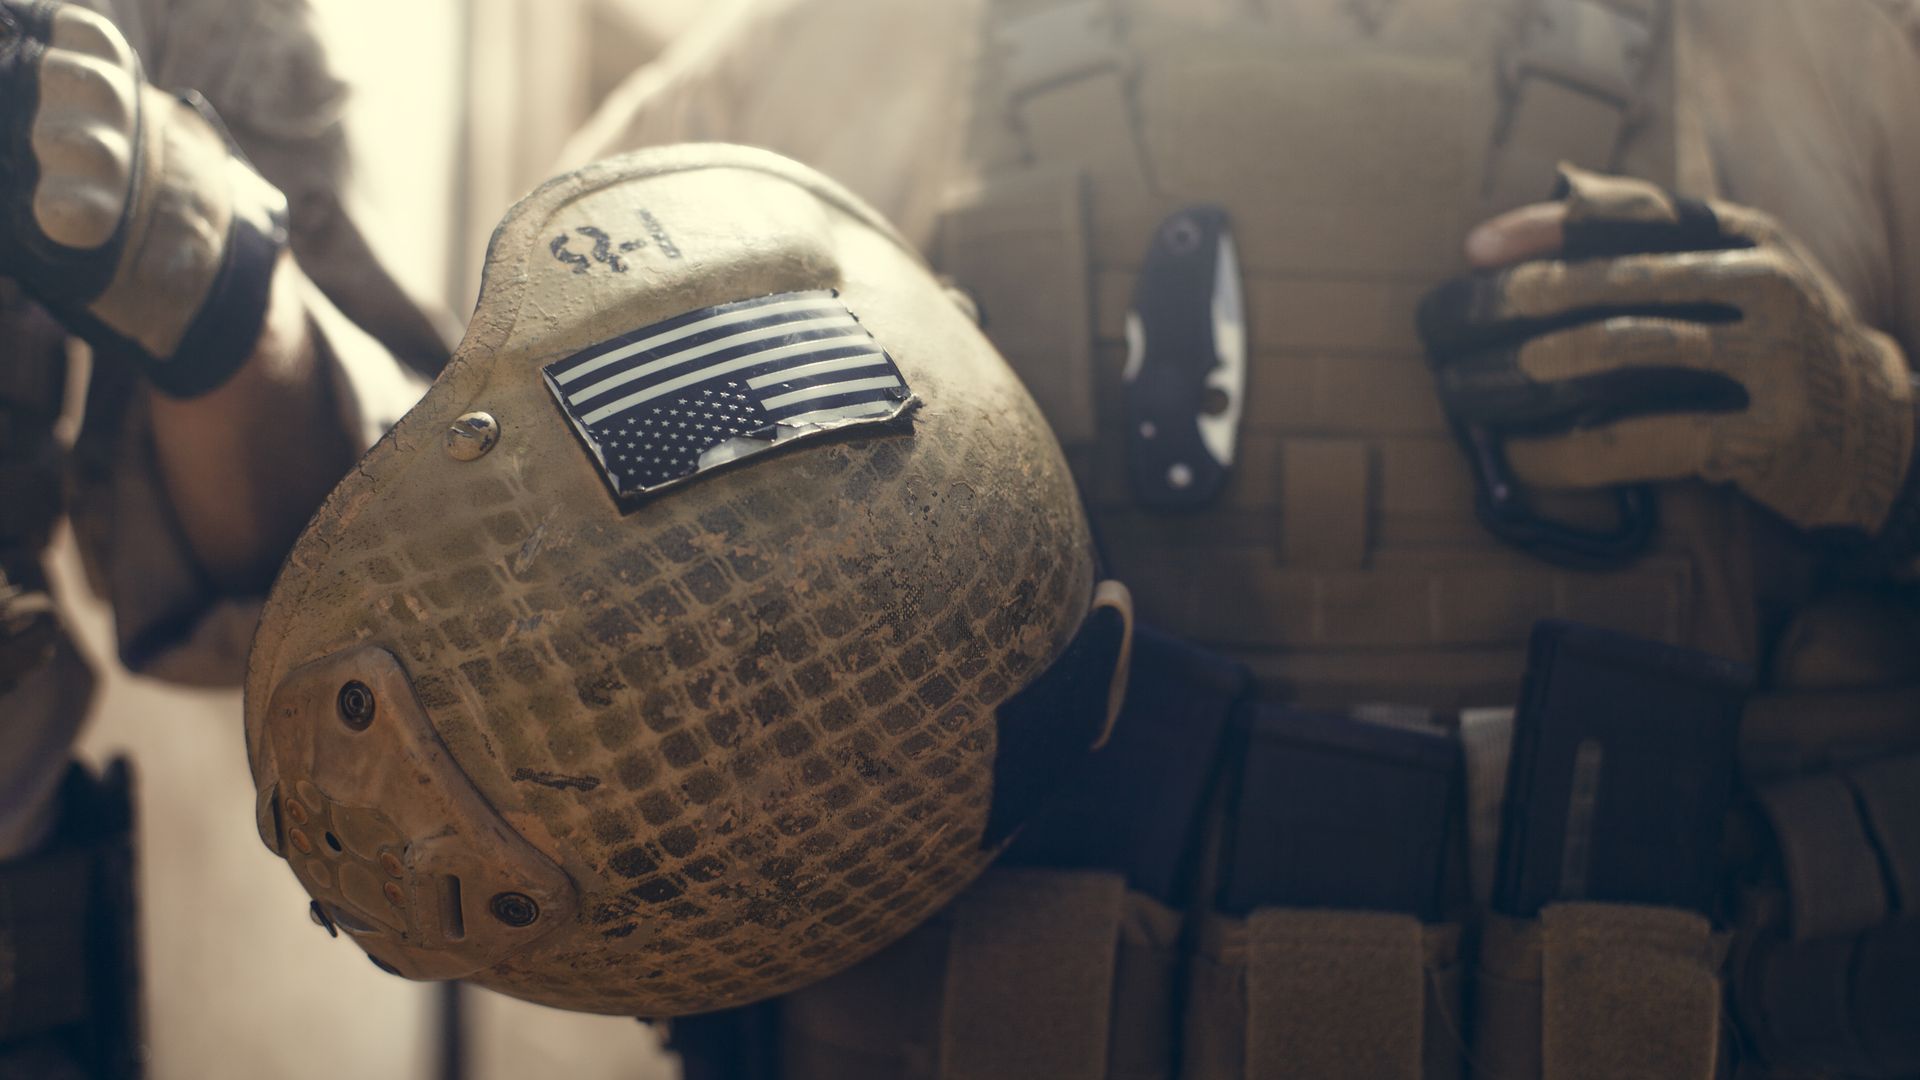 American soldier carrying their helmet